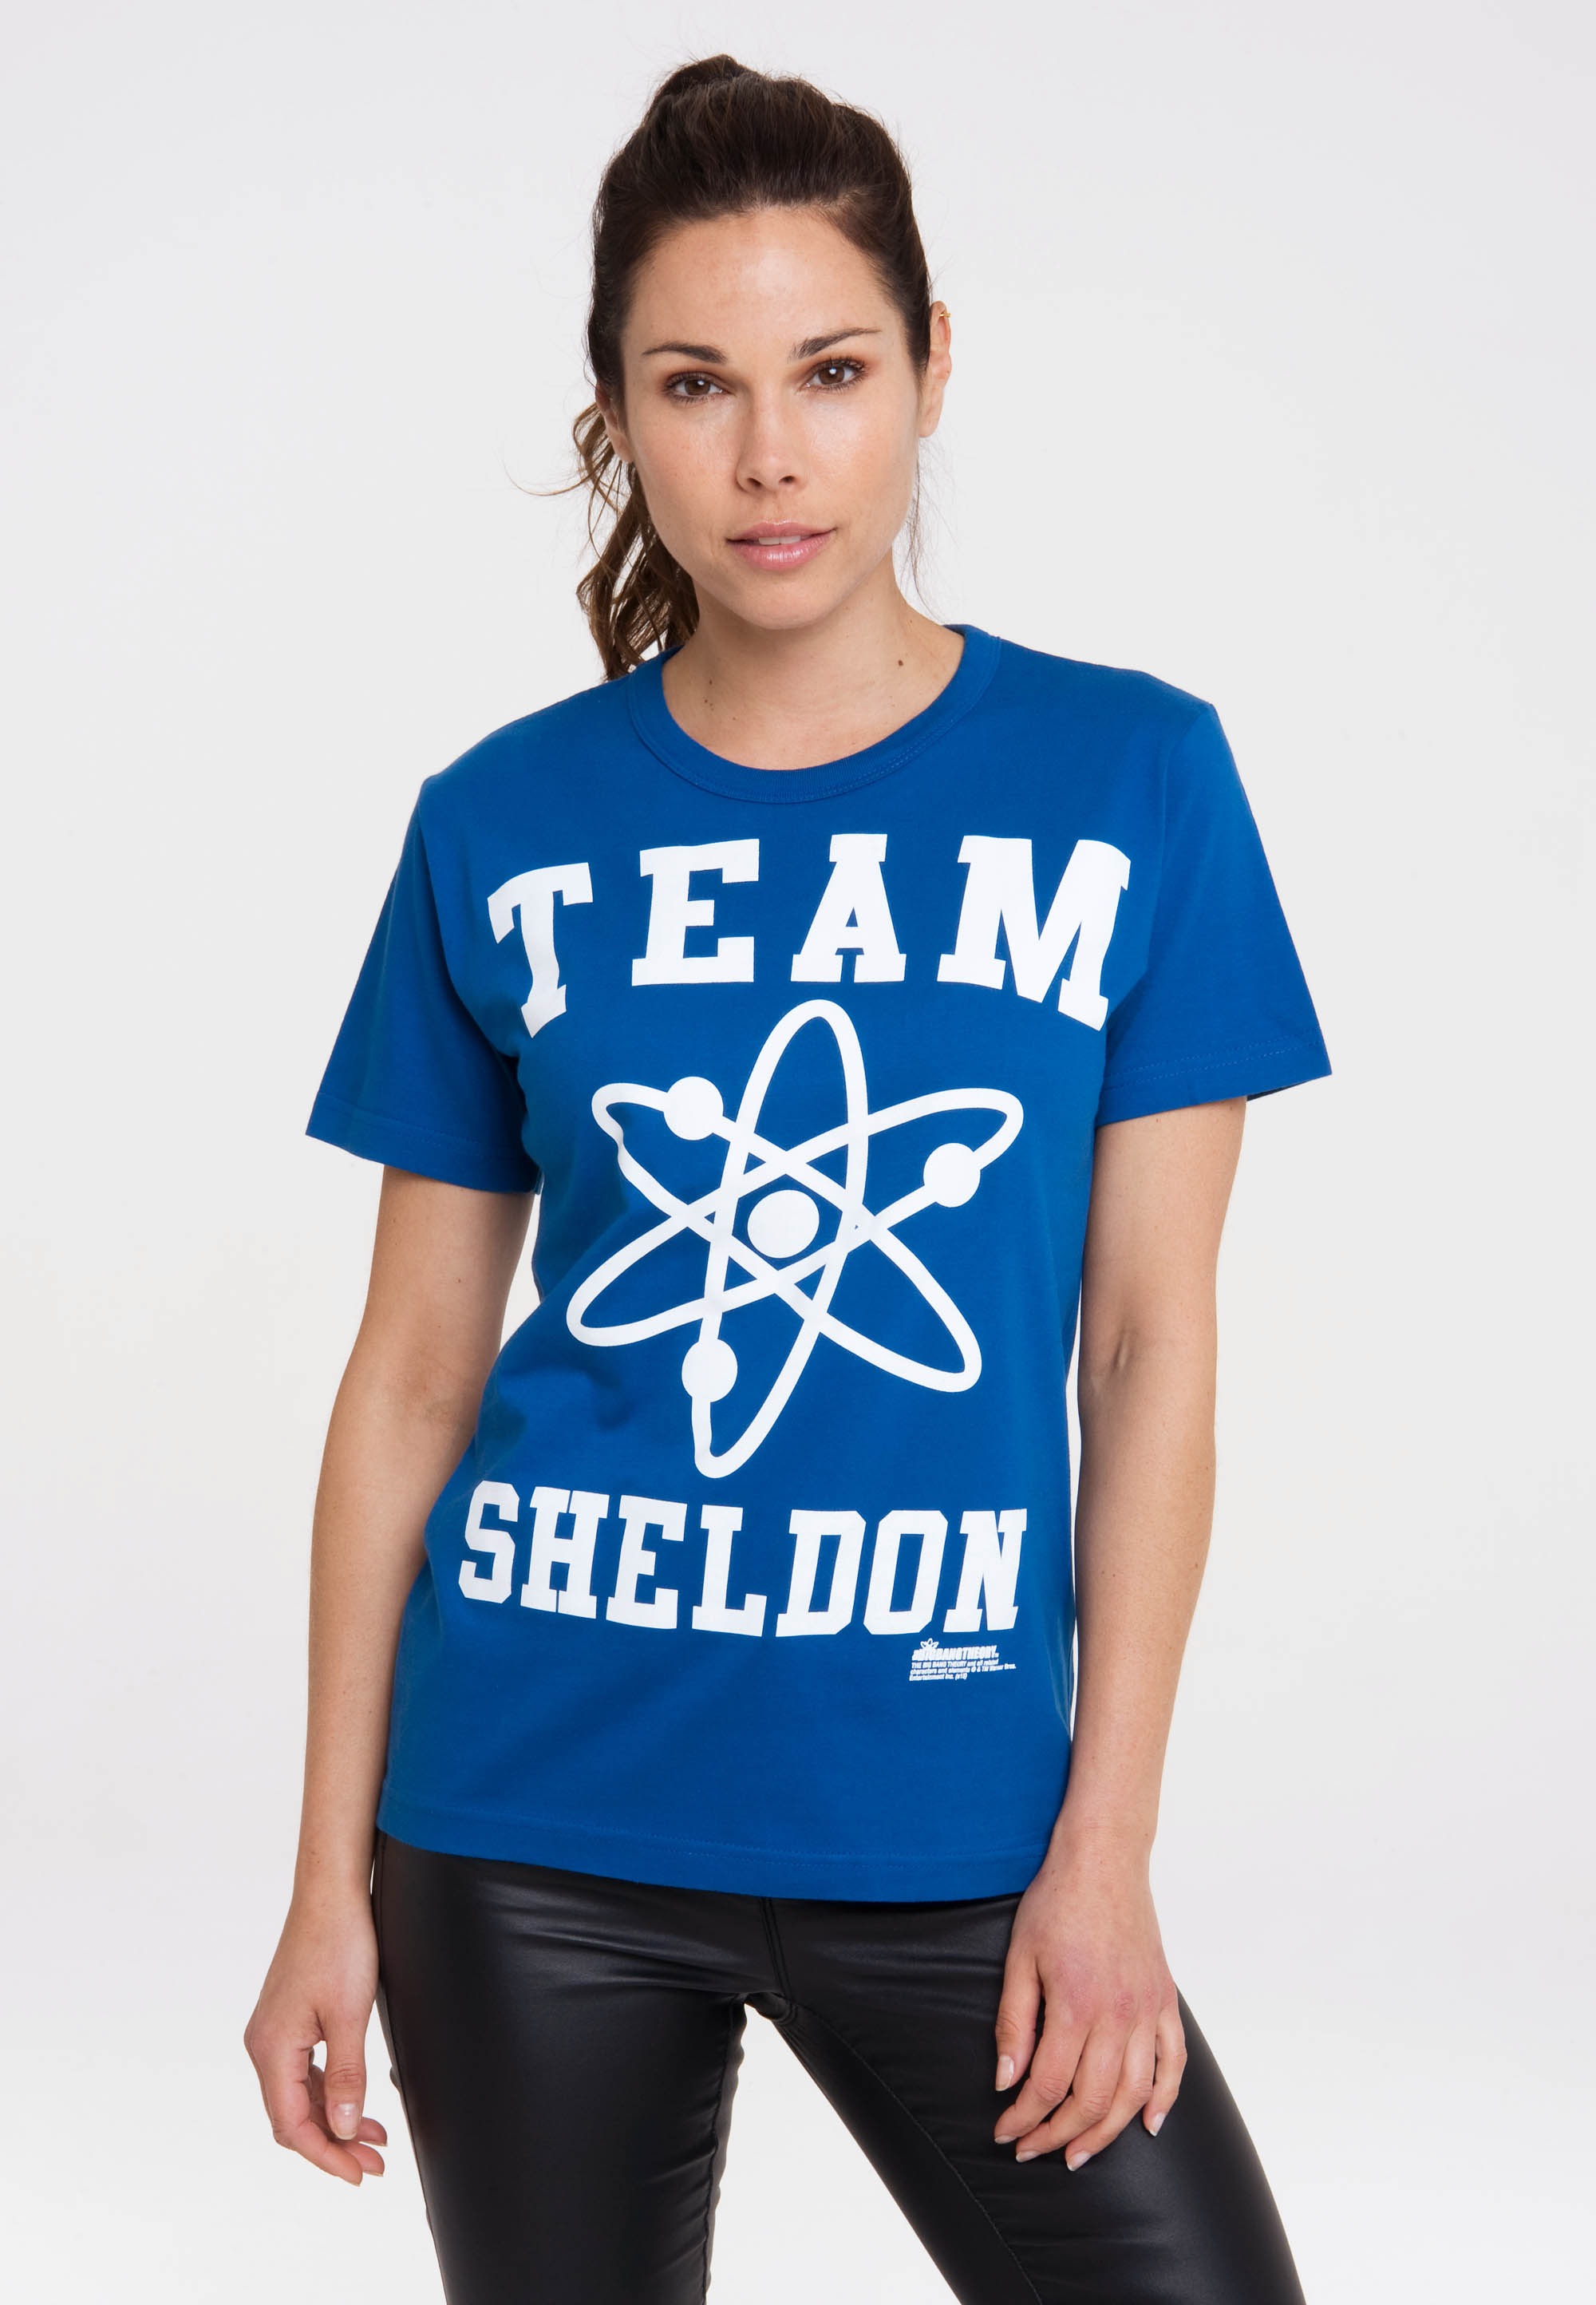 – Sheldon lizenziertem T-Shirt TBBT Print LOGOSHIRT mit Team